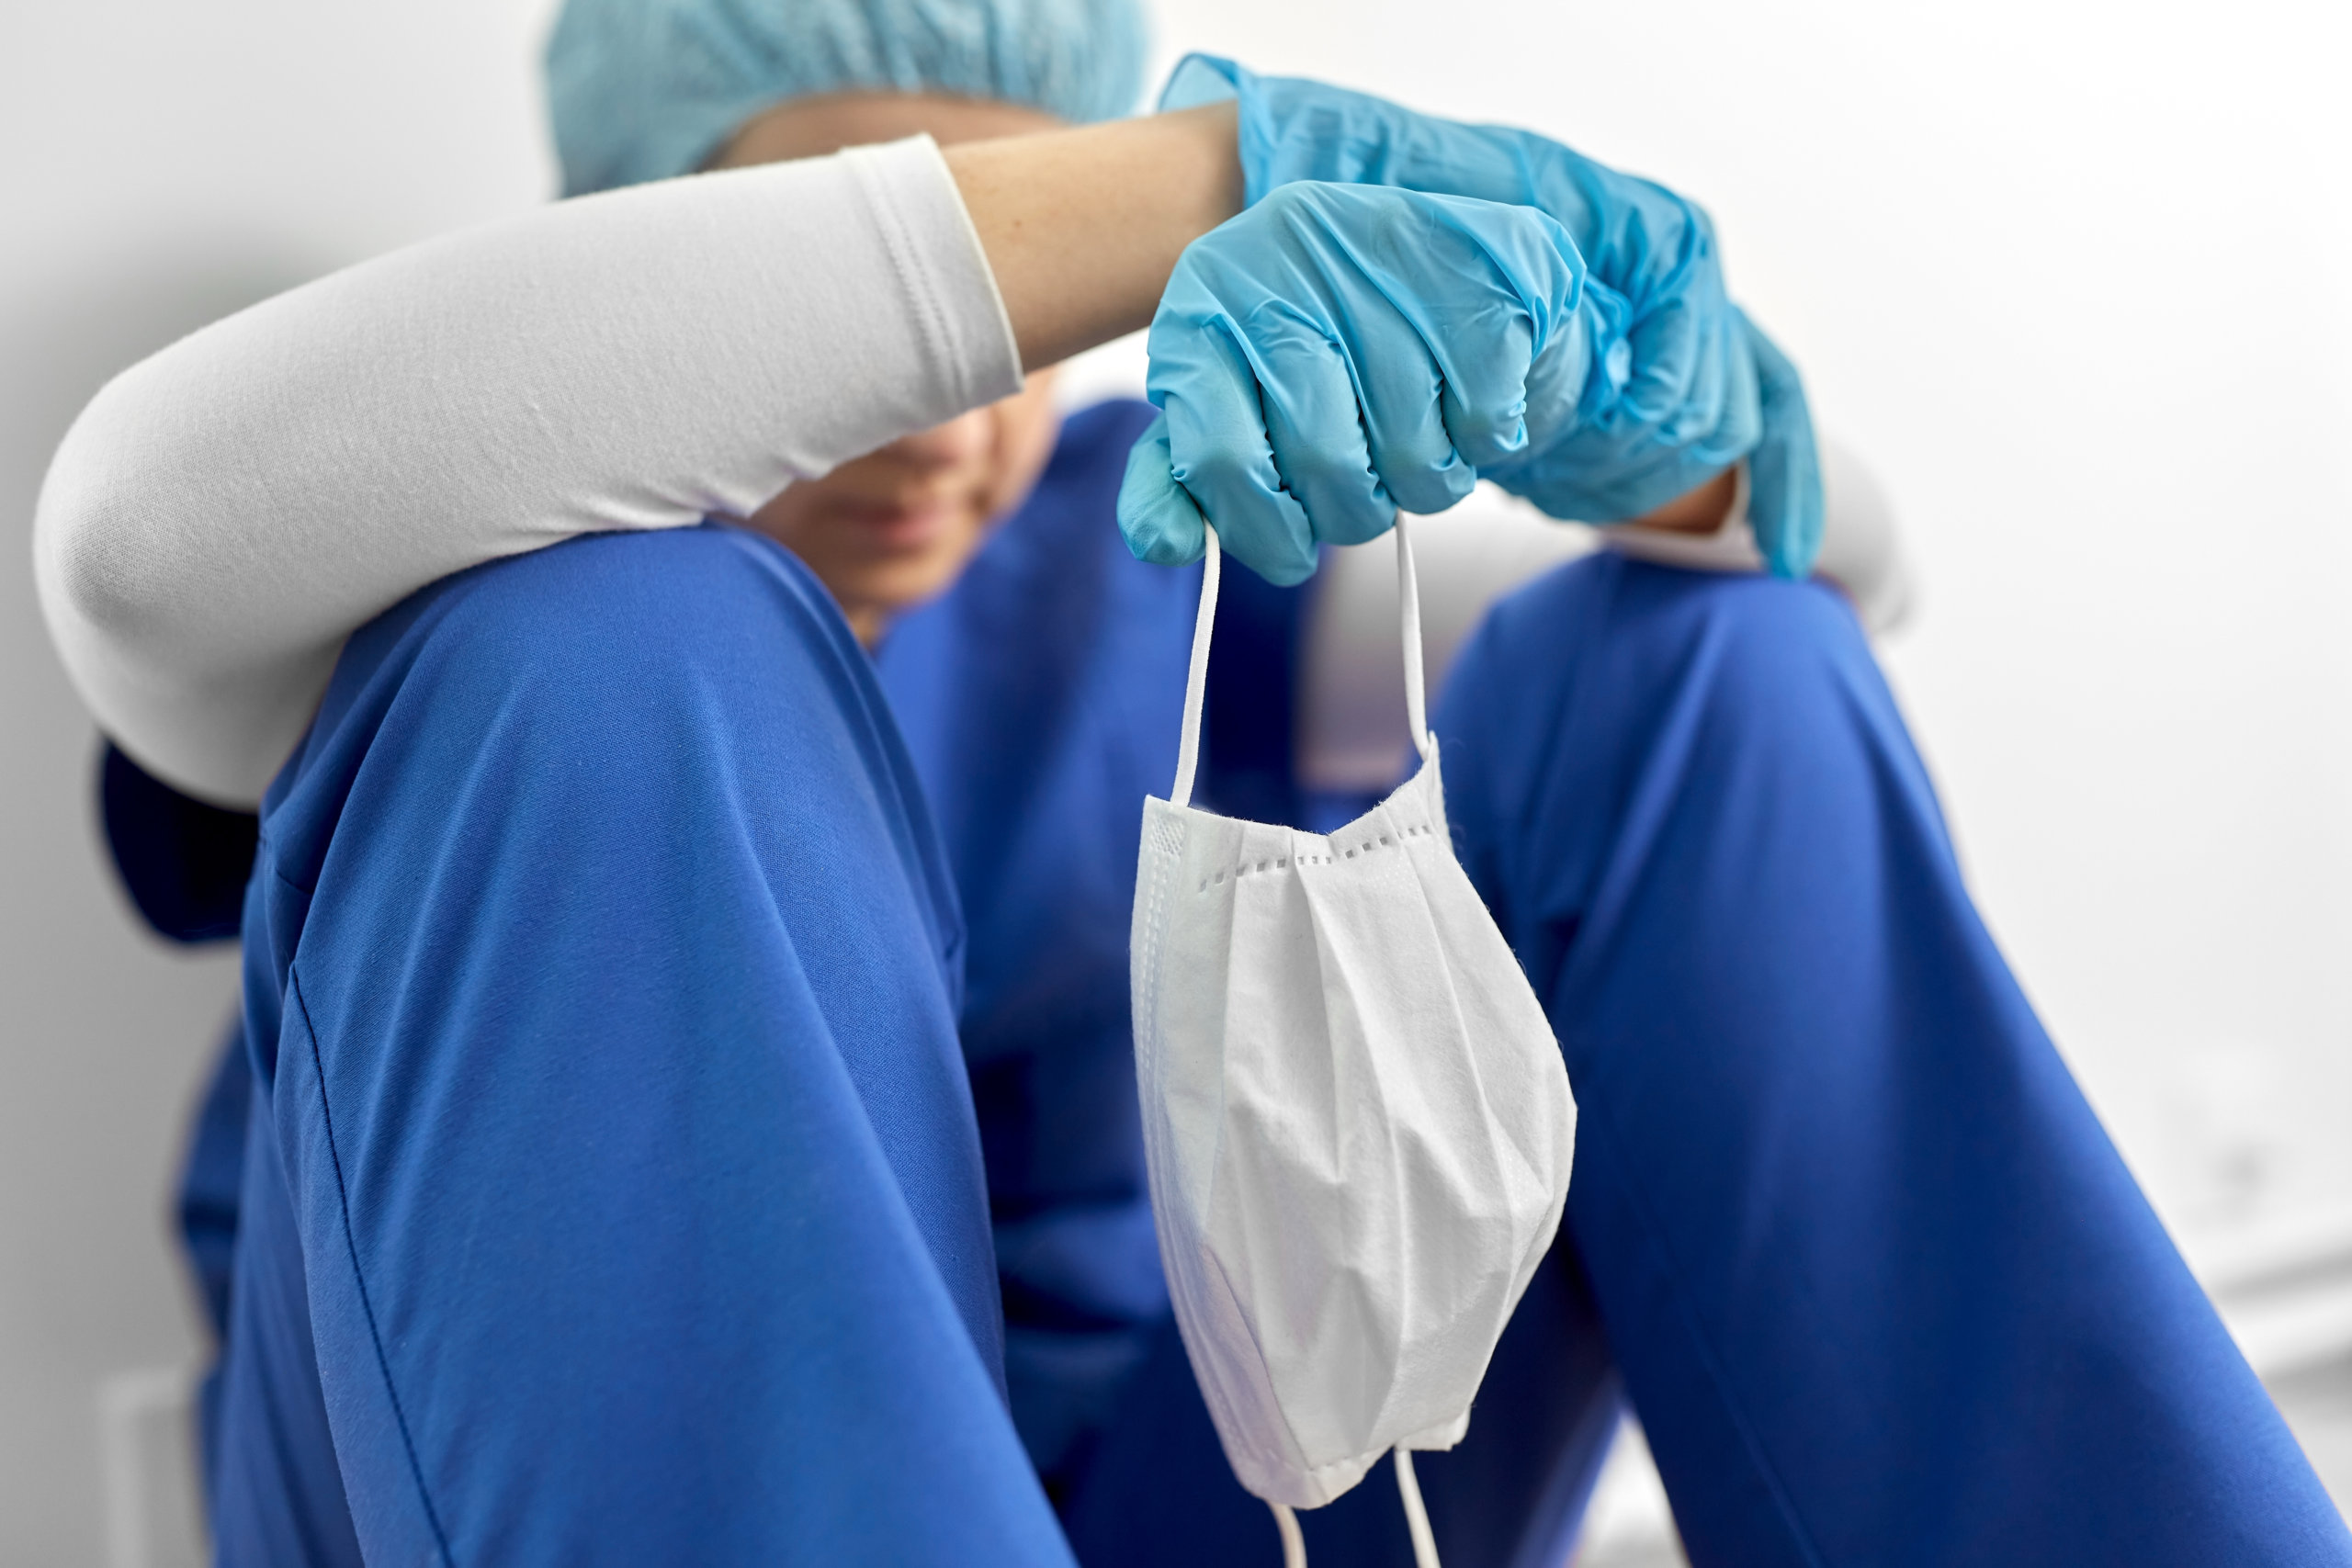 Pandemic burnout exacerbates state’s nursing shortage problem